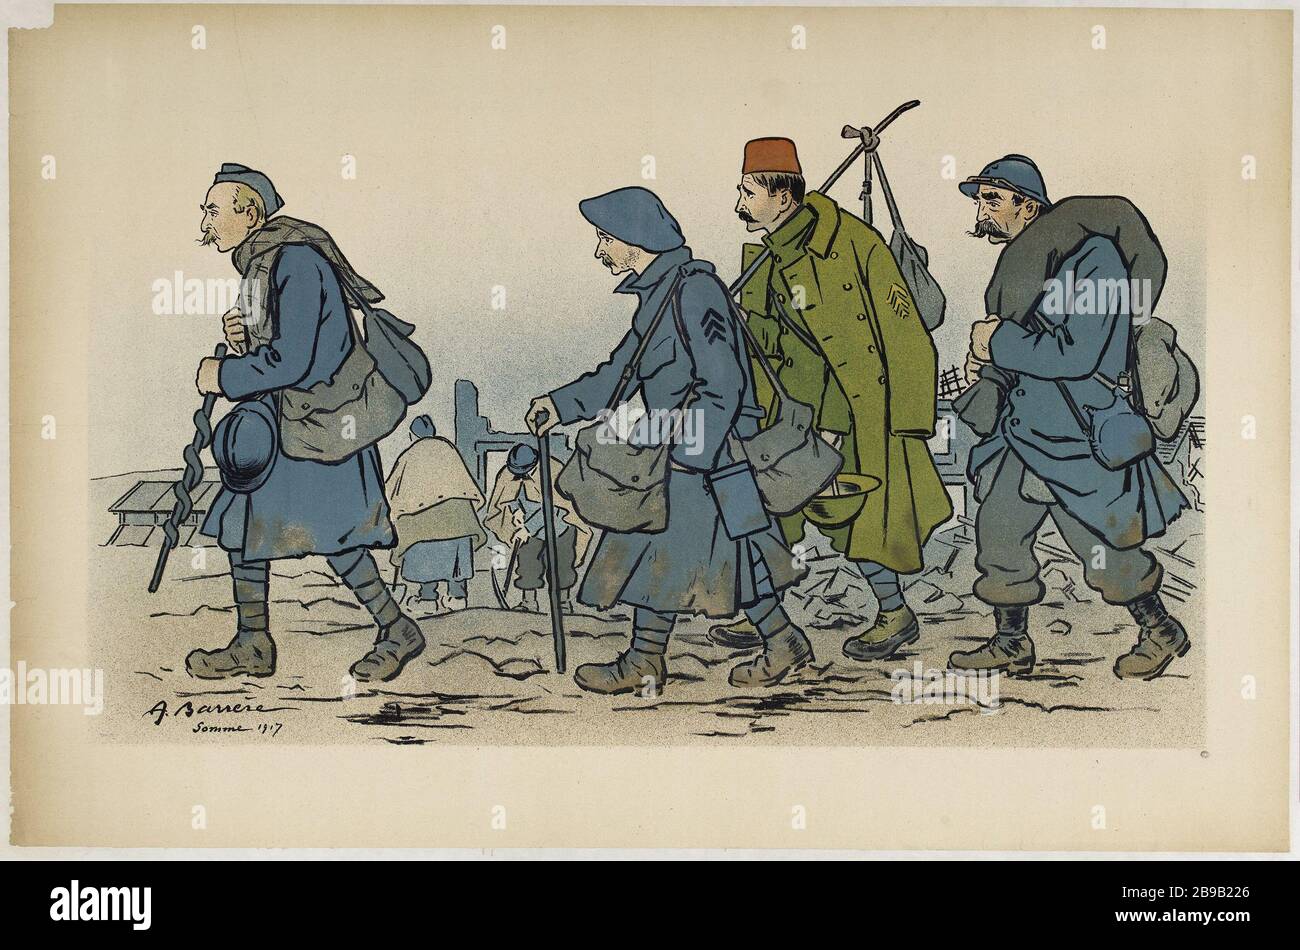 Soldati marzo Gruppo Adrien Barrère. "Groupe de soldats en marche". Lithographie couleur. 1917. Parigi, musée Carnavalet. Foto Stock